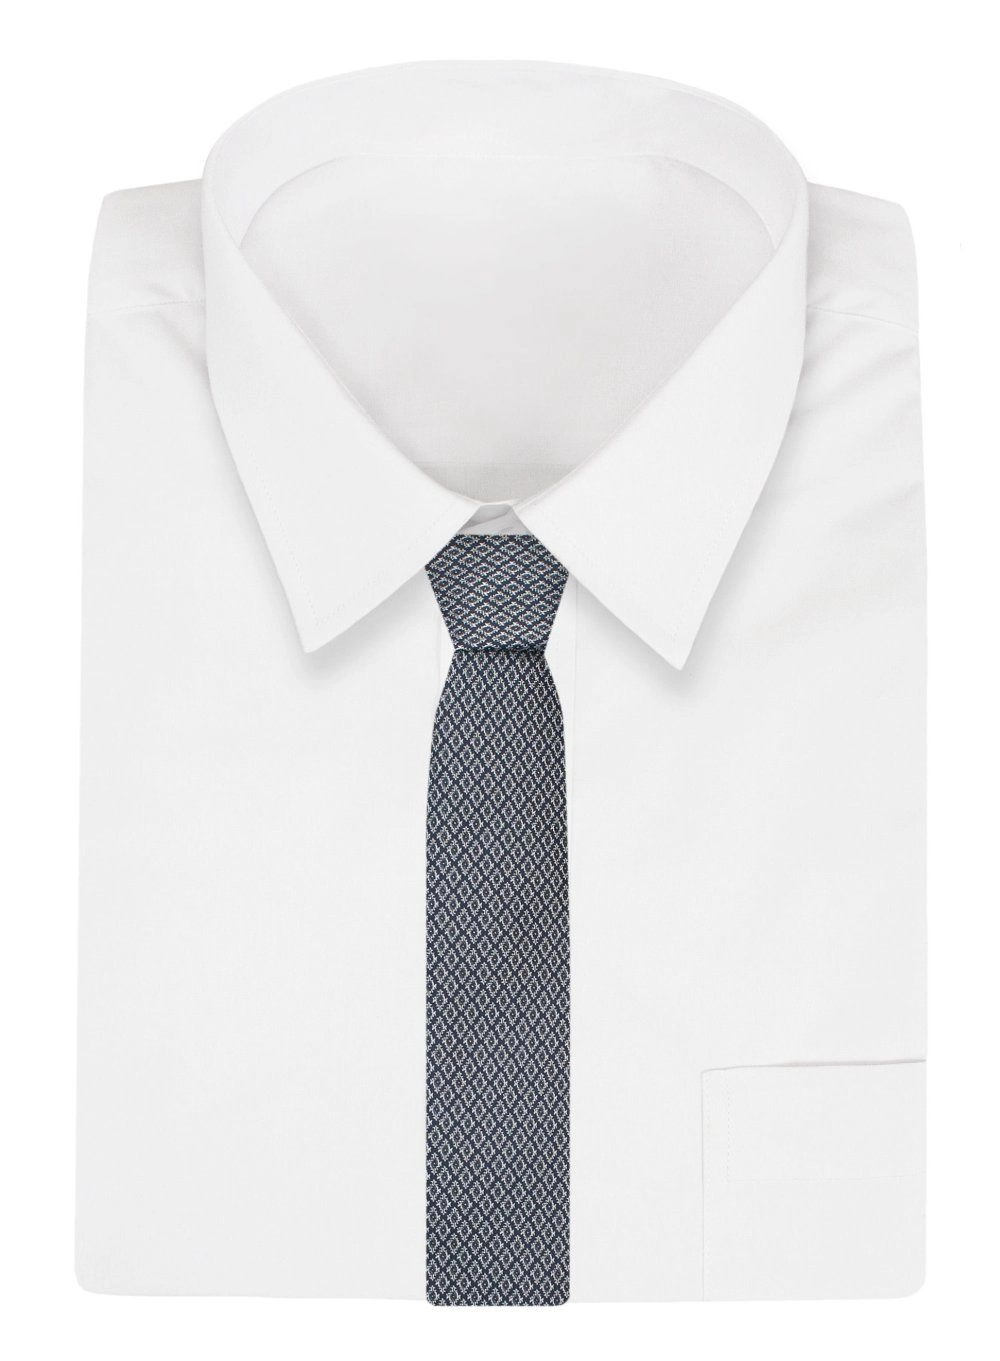 Krawat Klasyczny, Granatowo-Biały w Drobny Geometryczny Wzór, Szeroki 8 cm, Elegancki -CHATTIER